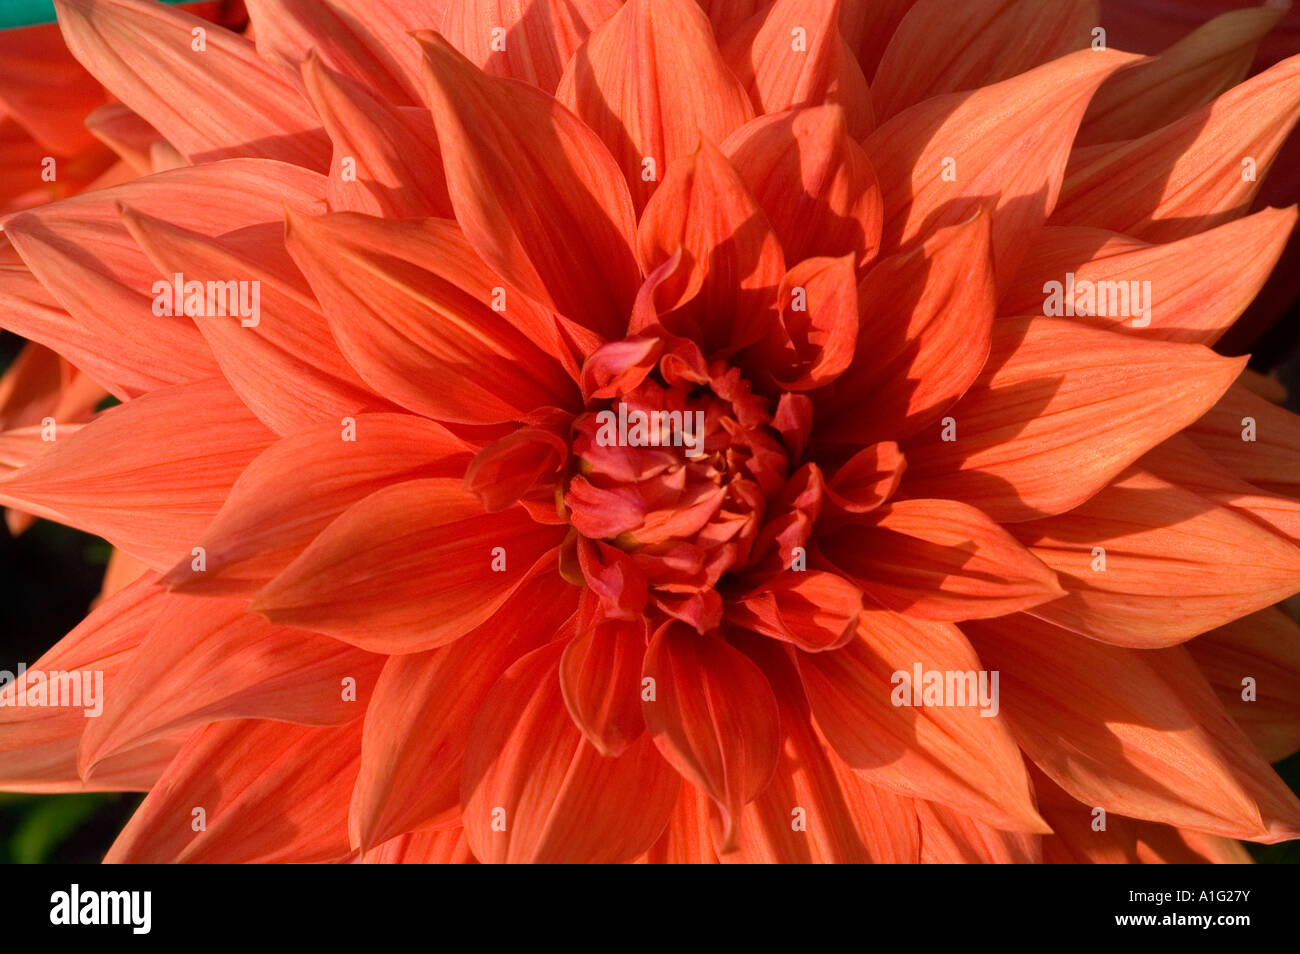 Rosso arancione fiore close up Dahlia spettacolo di colori Foto Stock